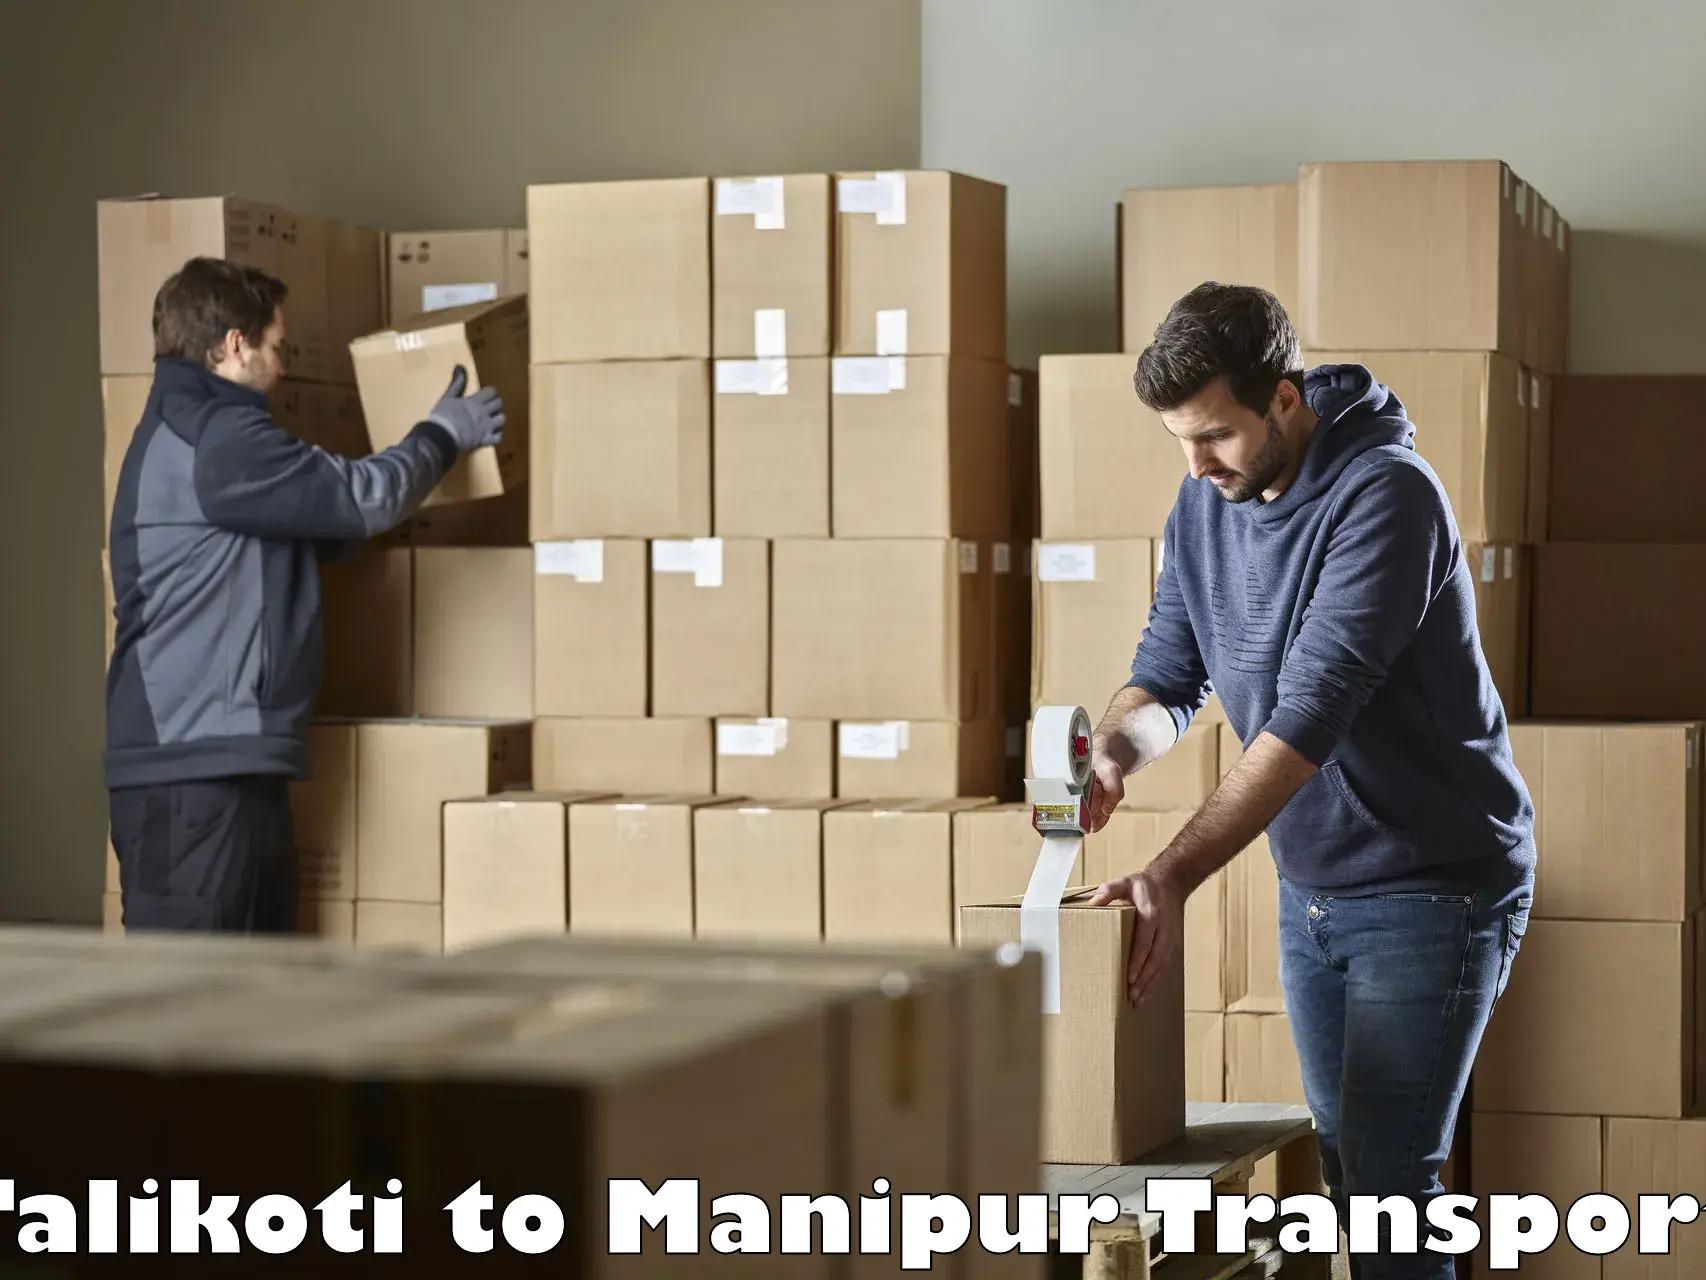 Furniture transport service Talikoti to Manipur